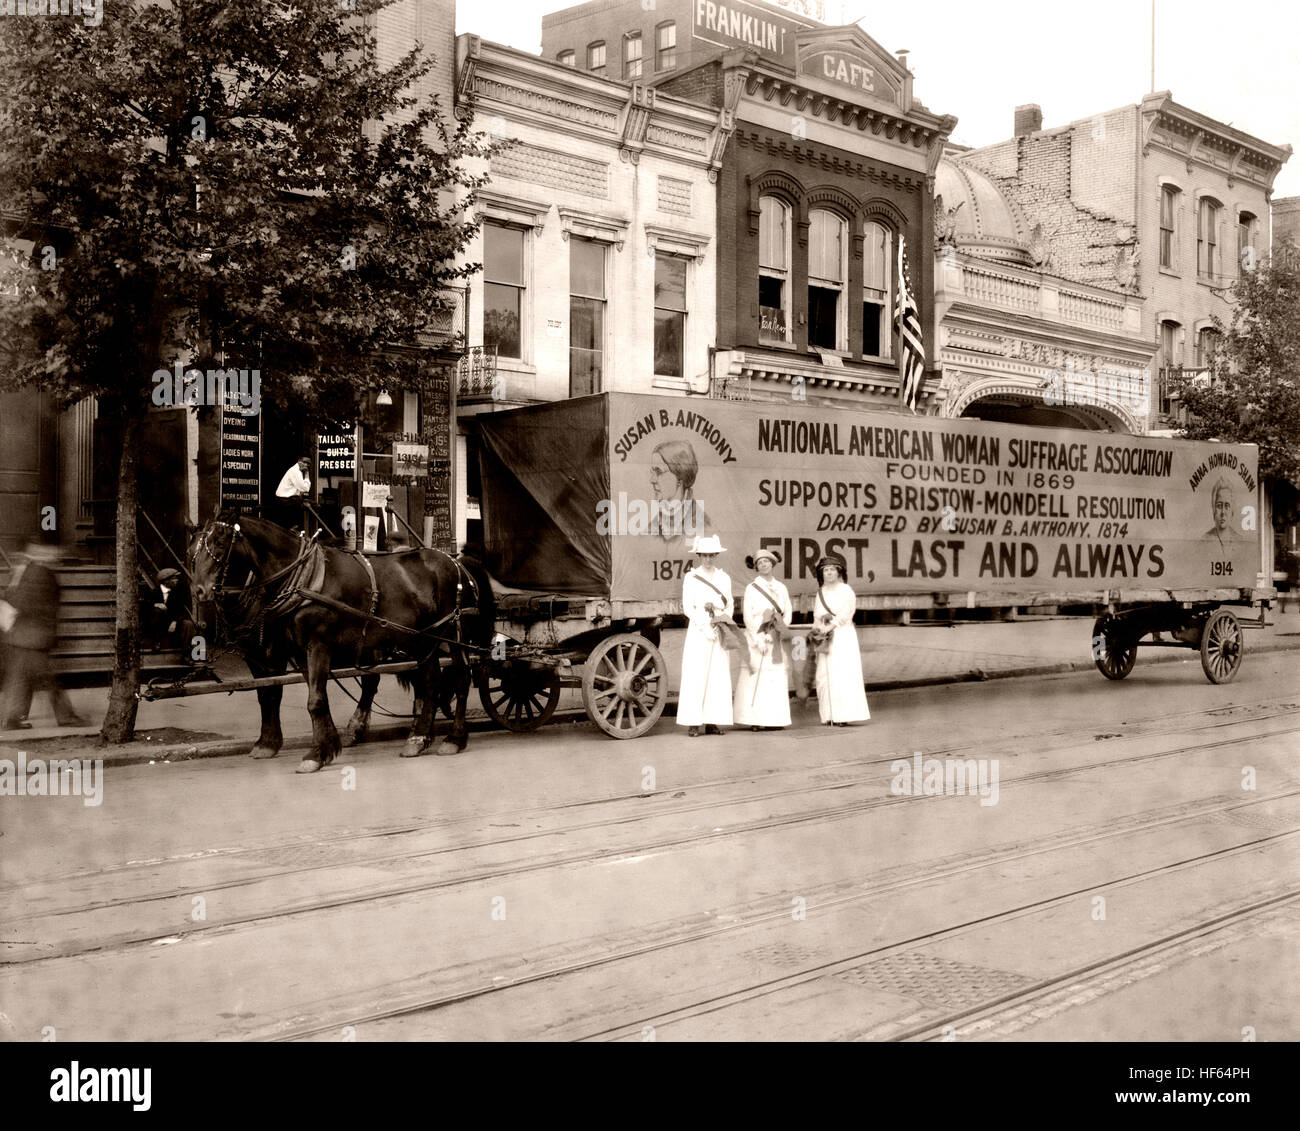 Trois femmes debout dans la rue en face de chariot tiré par des chevaux avec signe, 'National American Woman Suffrage Association fondée en 1869 prend en charge la résolution Bristow-Mondell rédigé par Susan B. Anthony, 1874, "d'abord et toujours." vers 1917. Banque D'Images